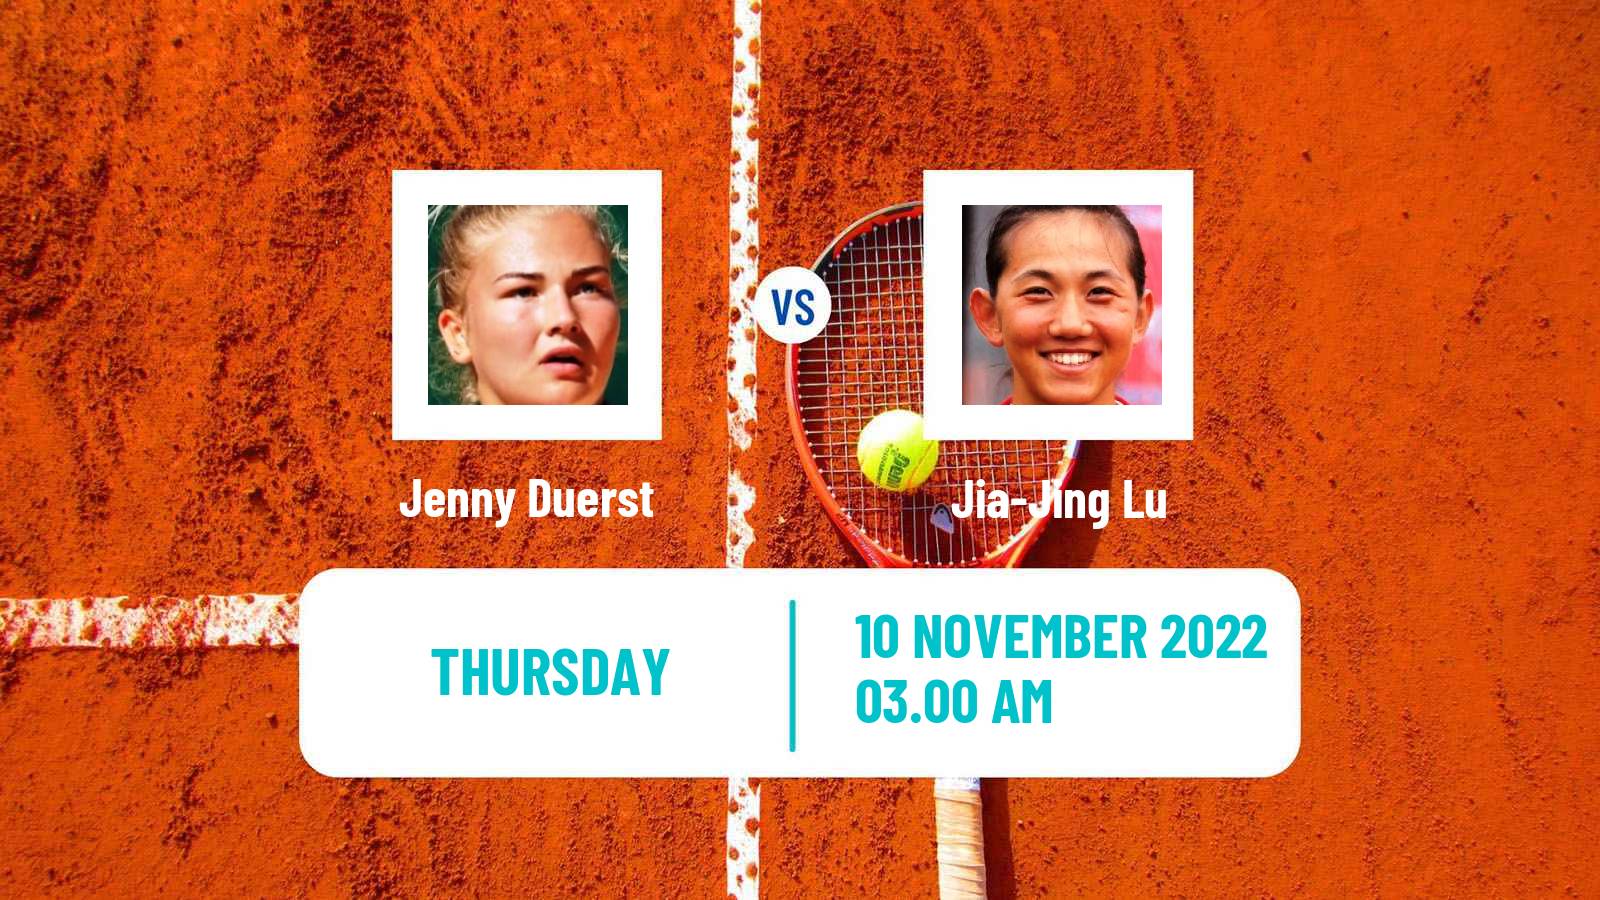 Tennis ITF Tournaments Jenny Duerst - Jia-Jing Lu